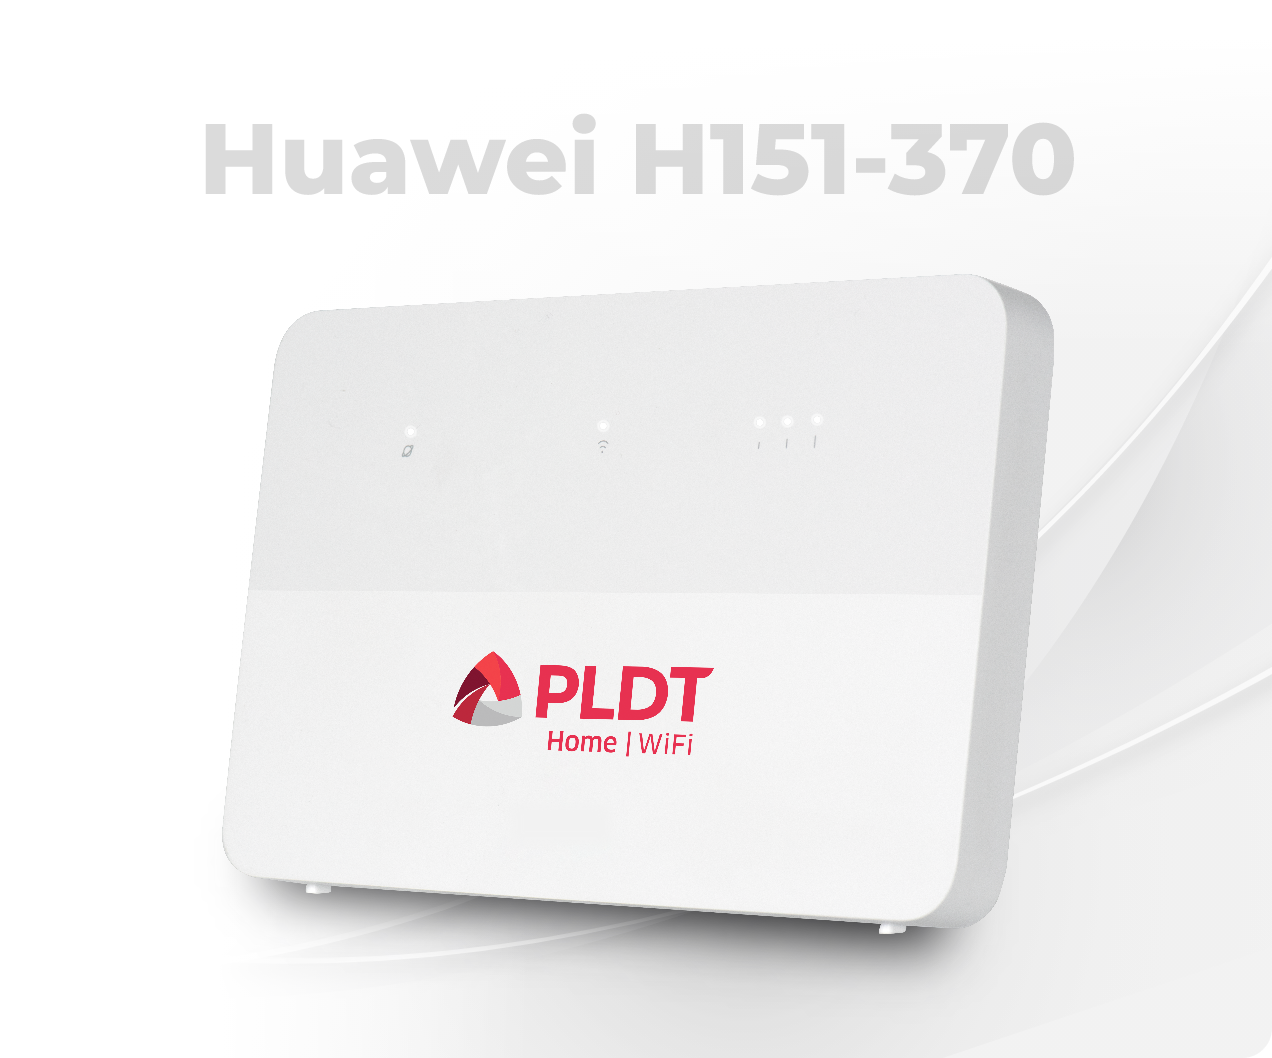 Huawei H151